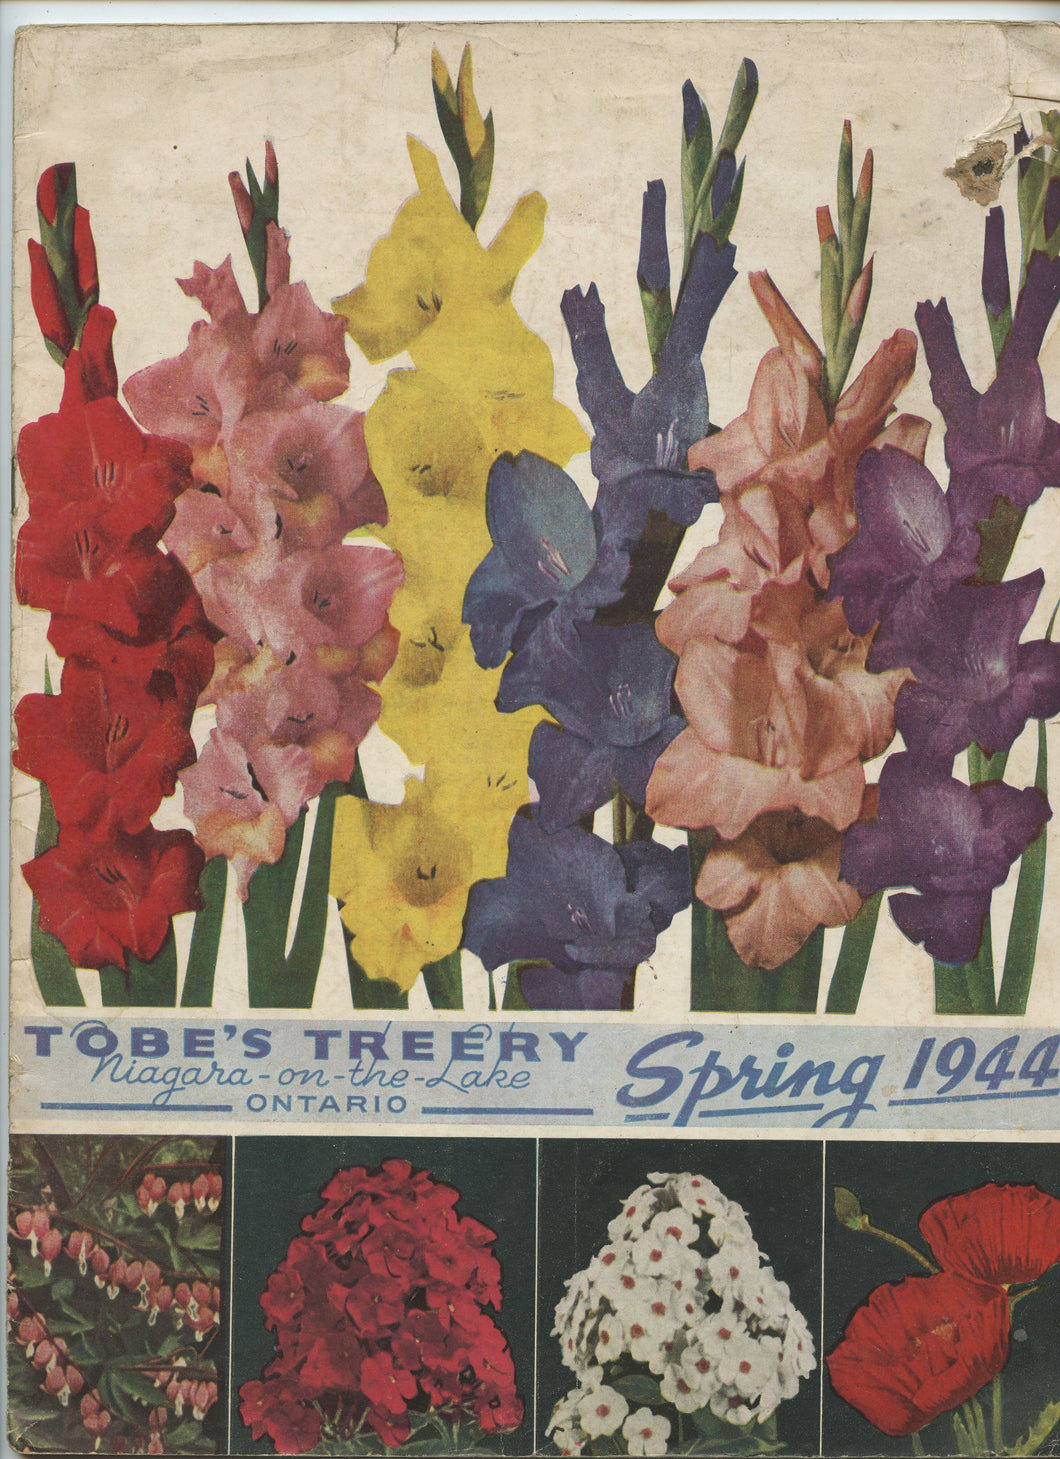 Tobe's Treery Spring 1944 catalogue